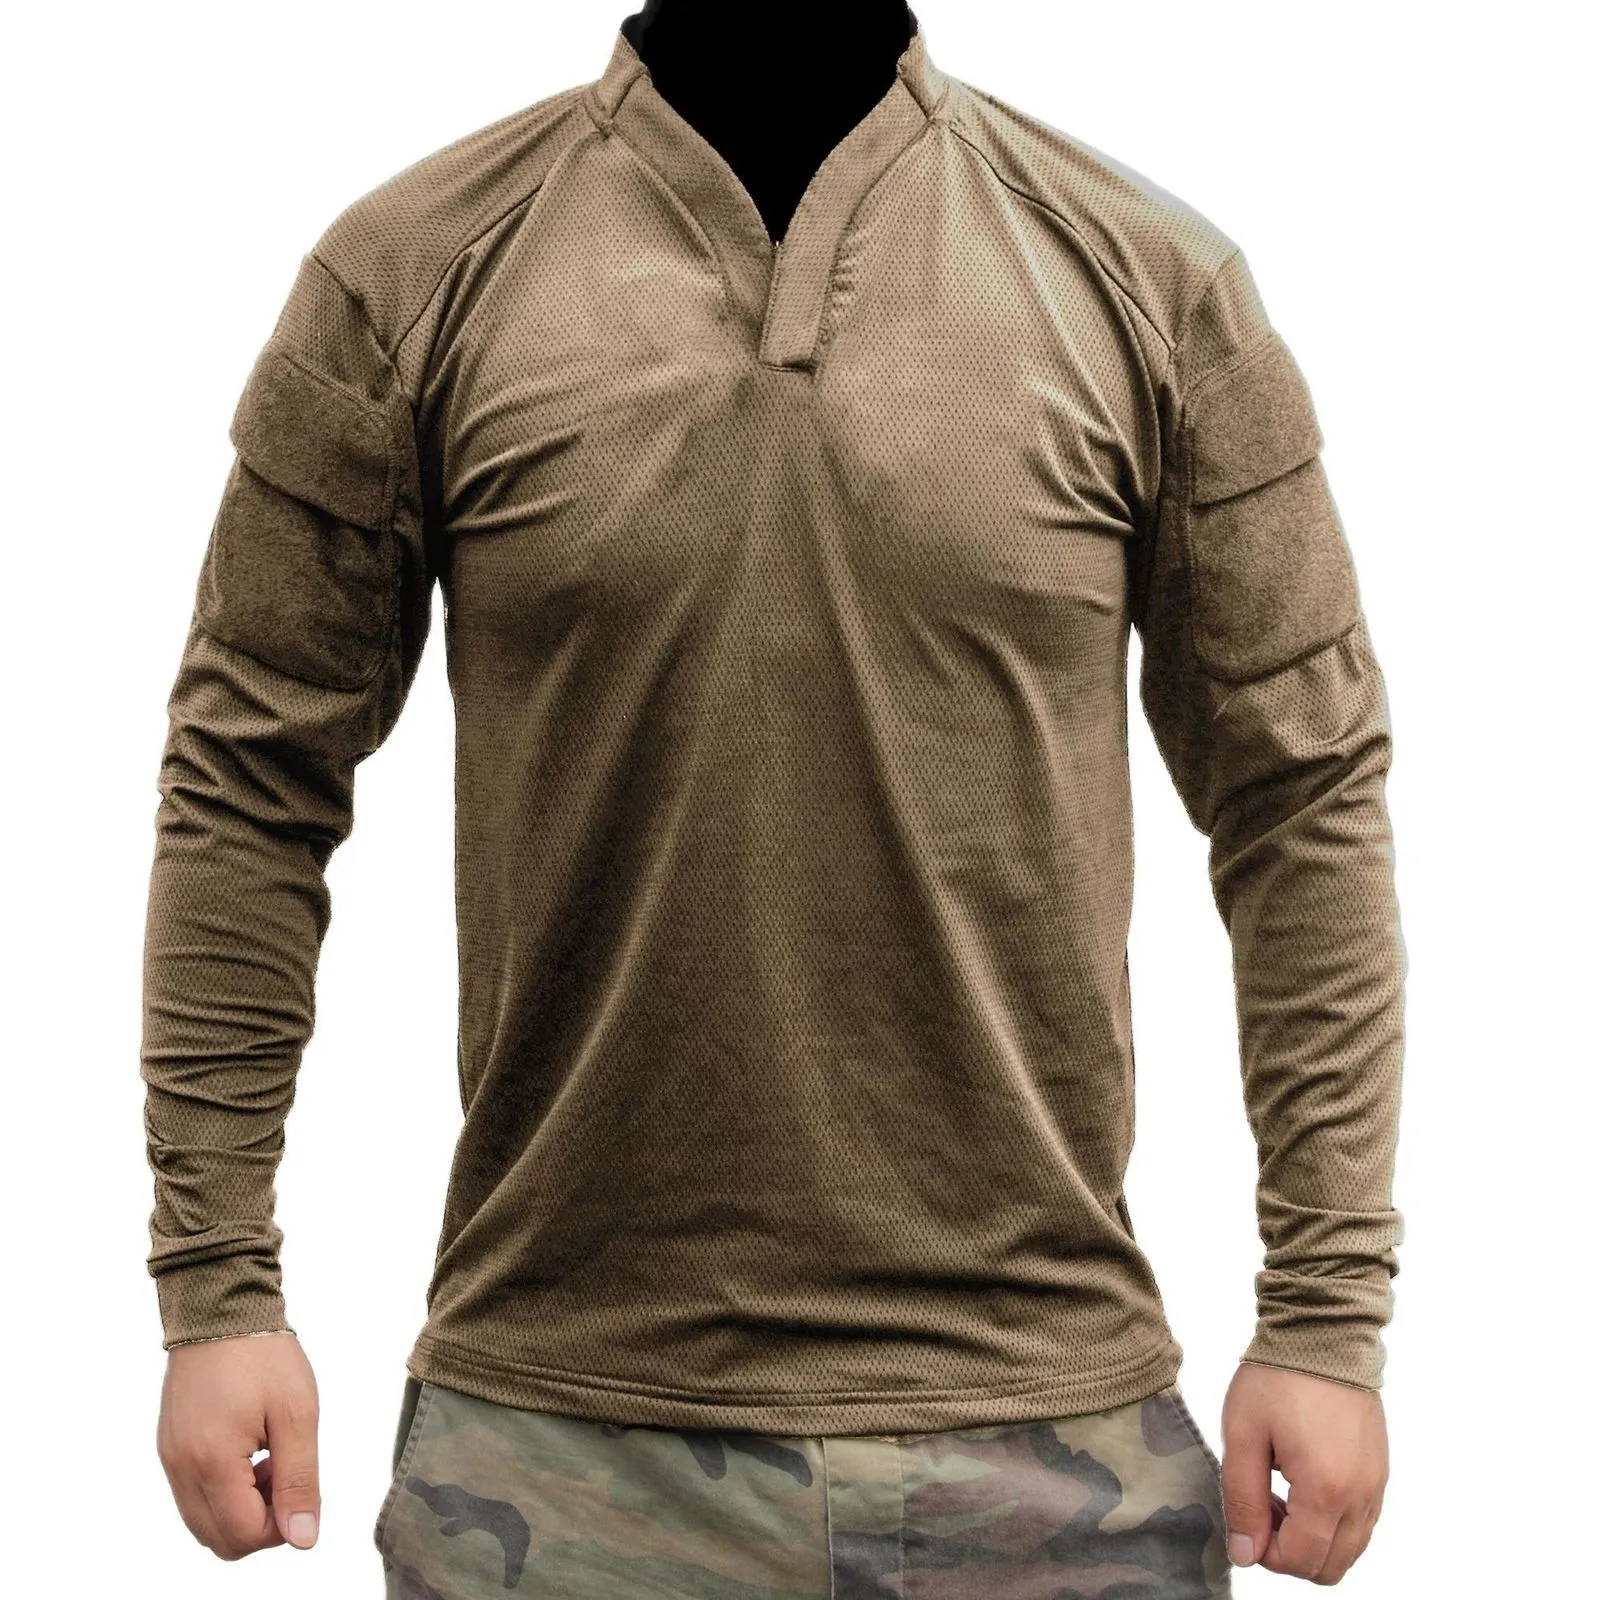 Camisas Casuais Masculinas P002 VS Camisa Tática de Combate Rugby de Manga Longa Camisa de Combate RG Camisa do Exército dos EUA 230202